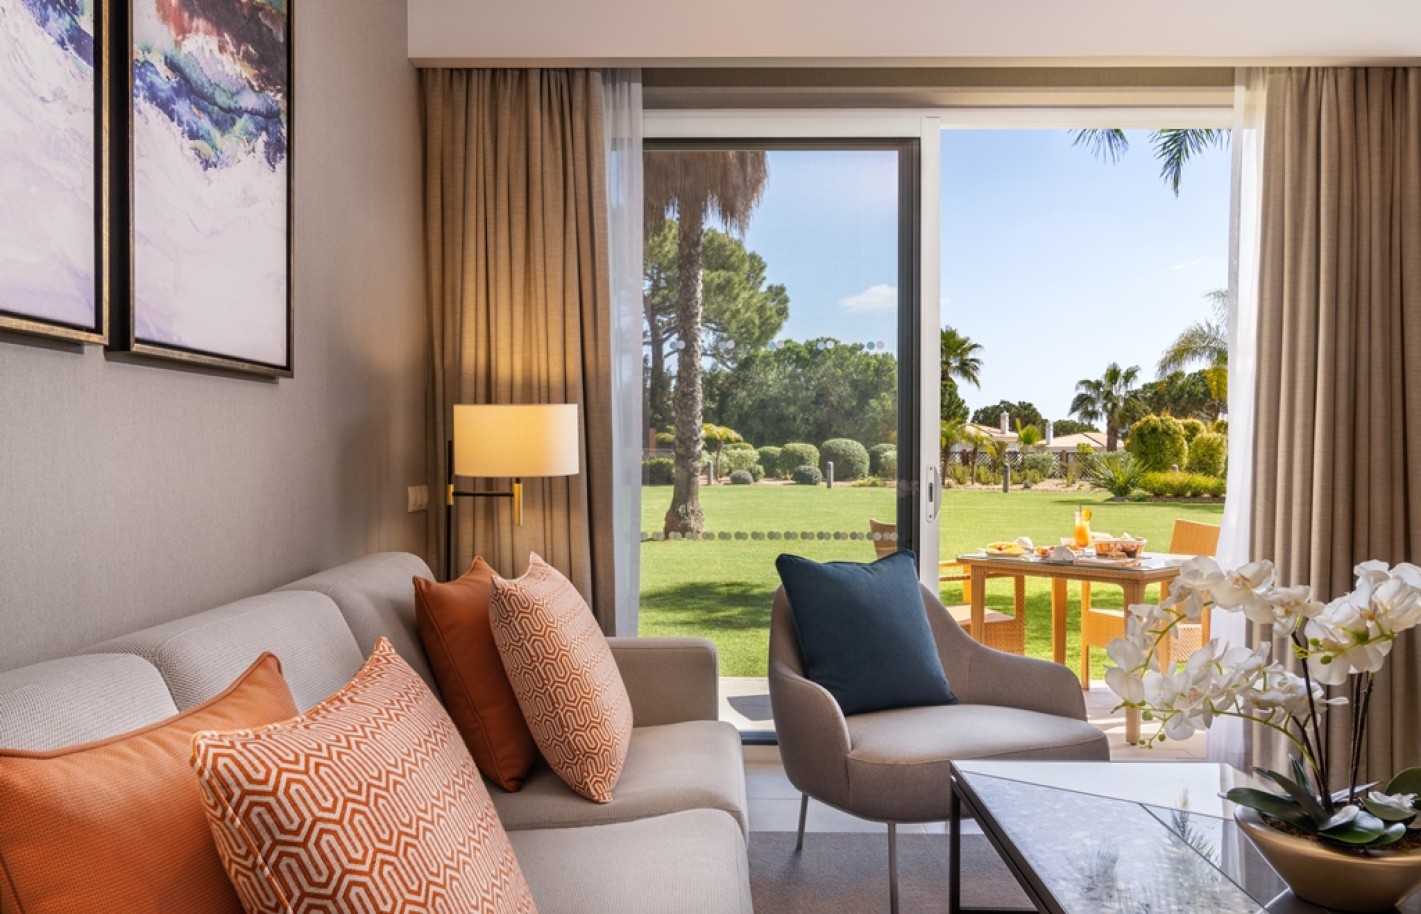 Apartamento, 2 quartos, piscina, para venda na Quinta do Lago, Algarve_263444